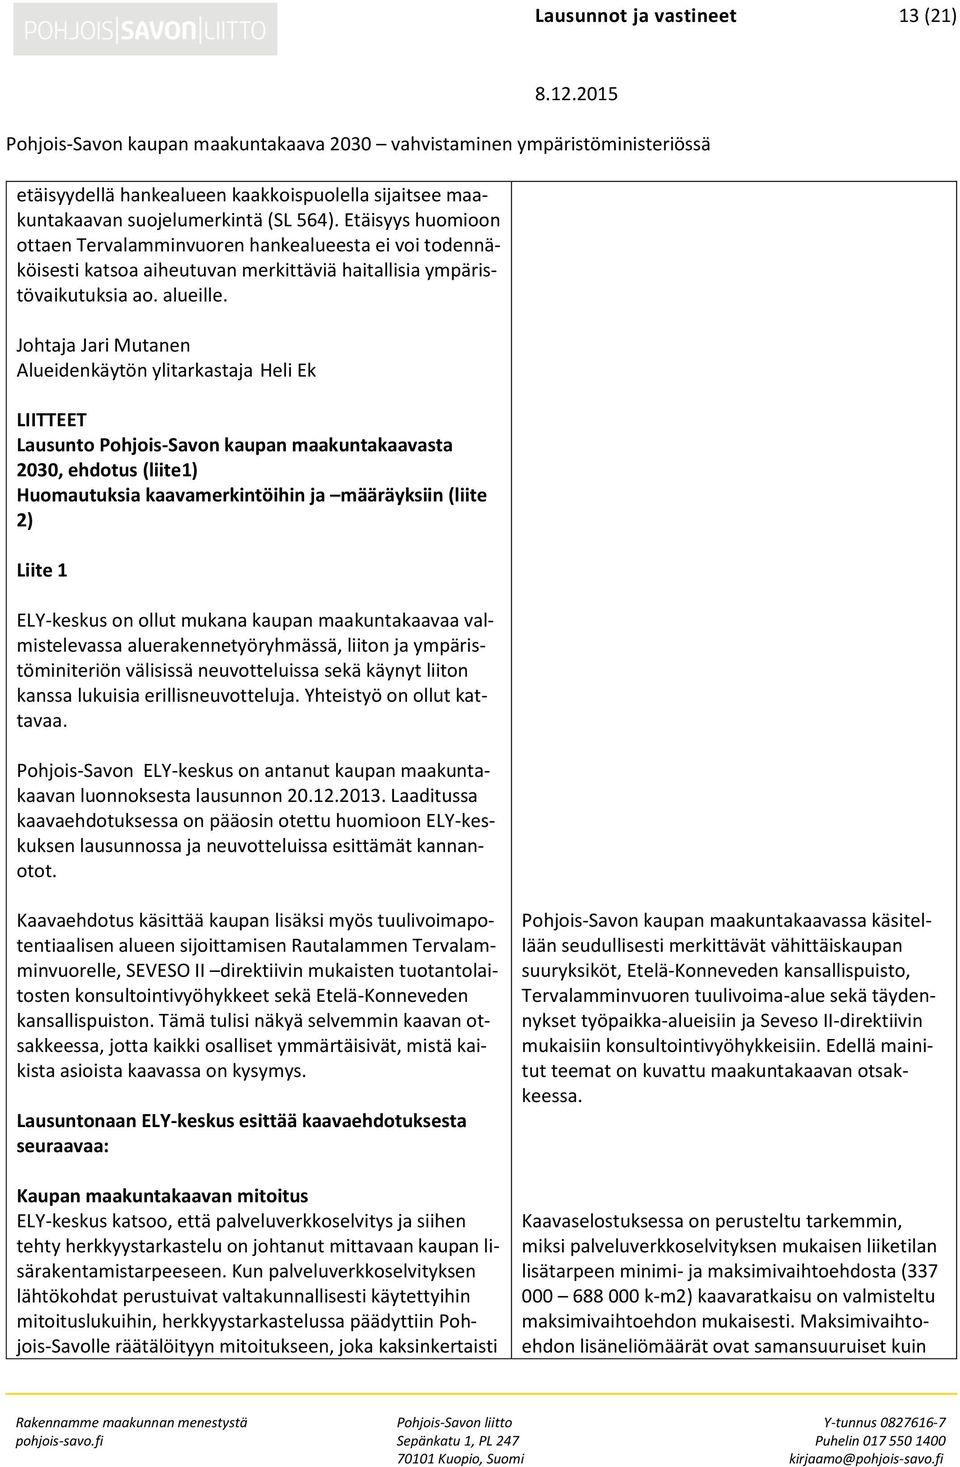 Johtaja Jari Mutanen Alueidenkäytön ylitarkastaja Heli Ek LIITTEET Lausunto Pohjois-Savon kaupan maakuntakaavasta 2030, ehdotus (liite1) Huomautuksia kaavamerkintöihin ja määräyksiin (liite 2) Liite